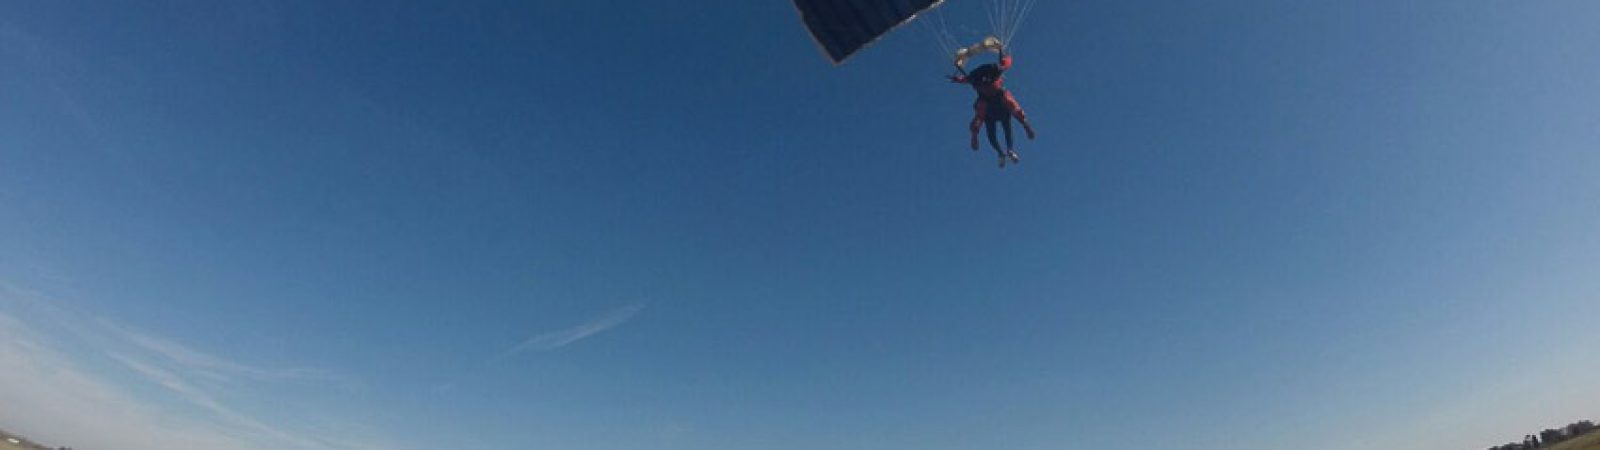 paracaidismo salto paracaidas chascomus buenos aires Conoce Argentina 054.travel-16